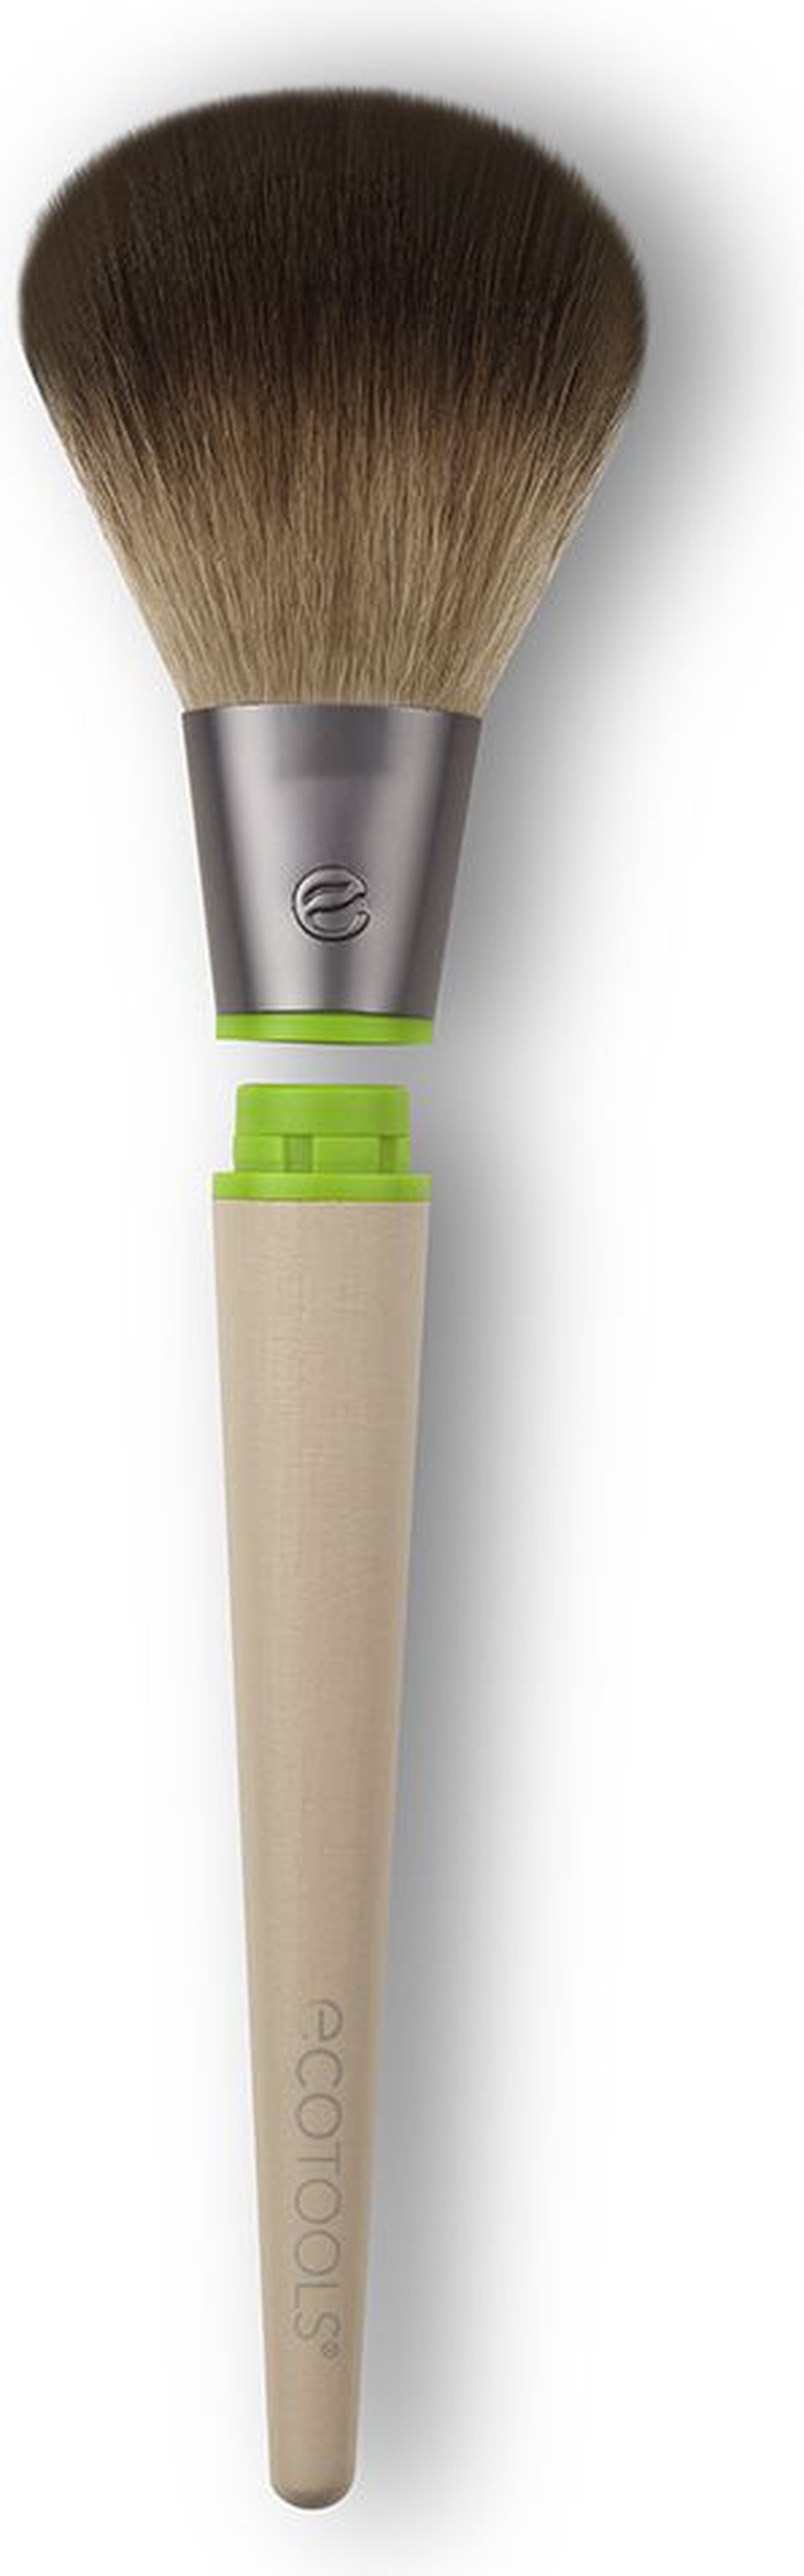 Кисть для пудры (сменная насадка и ручка) EcoTools Interchangeables Tapered Powder, бежевый/зеленый фото